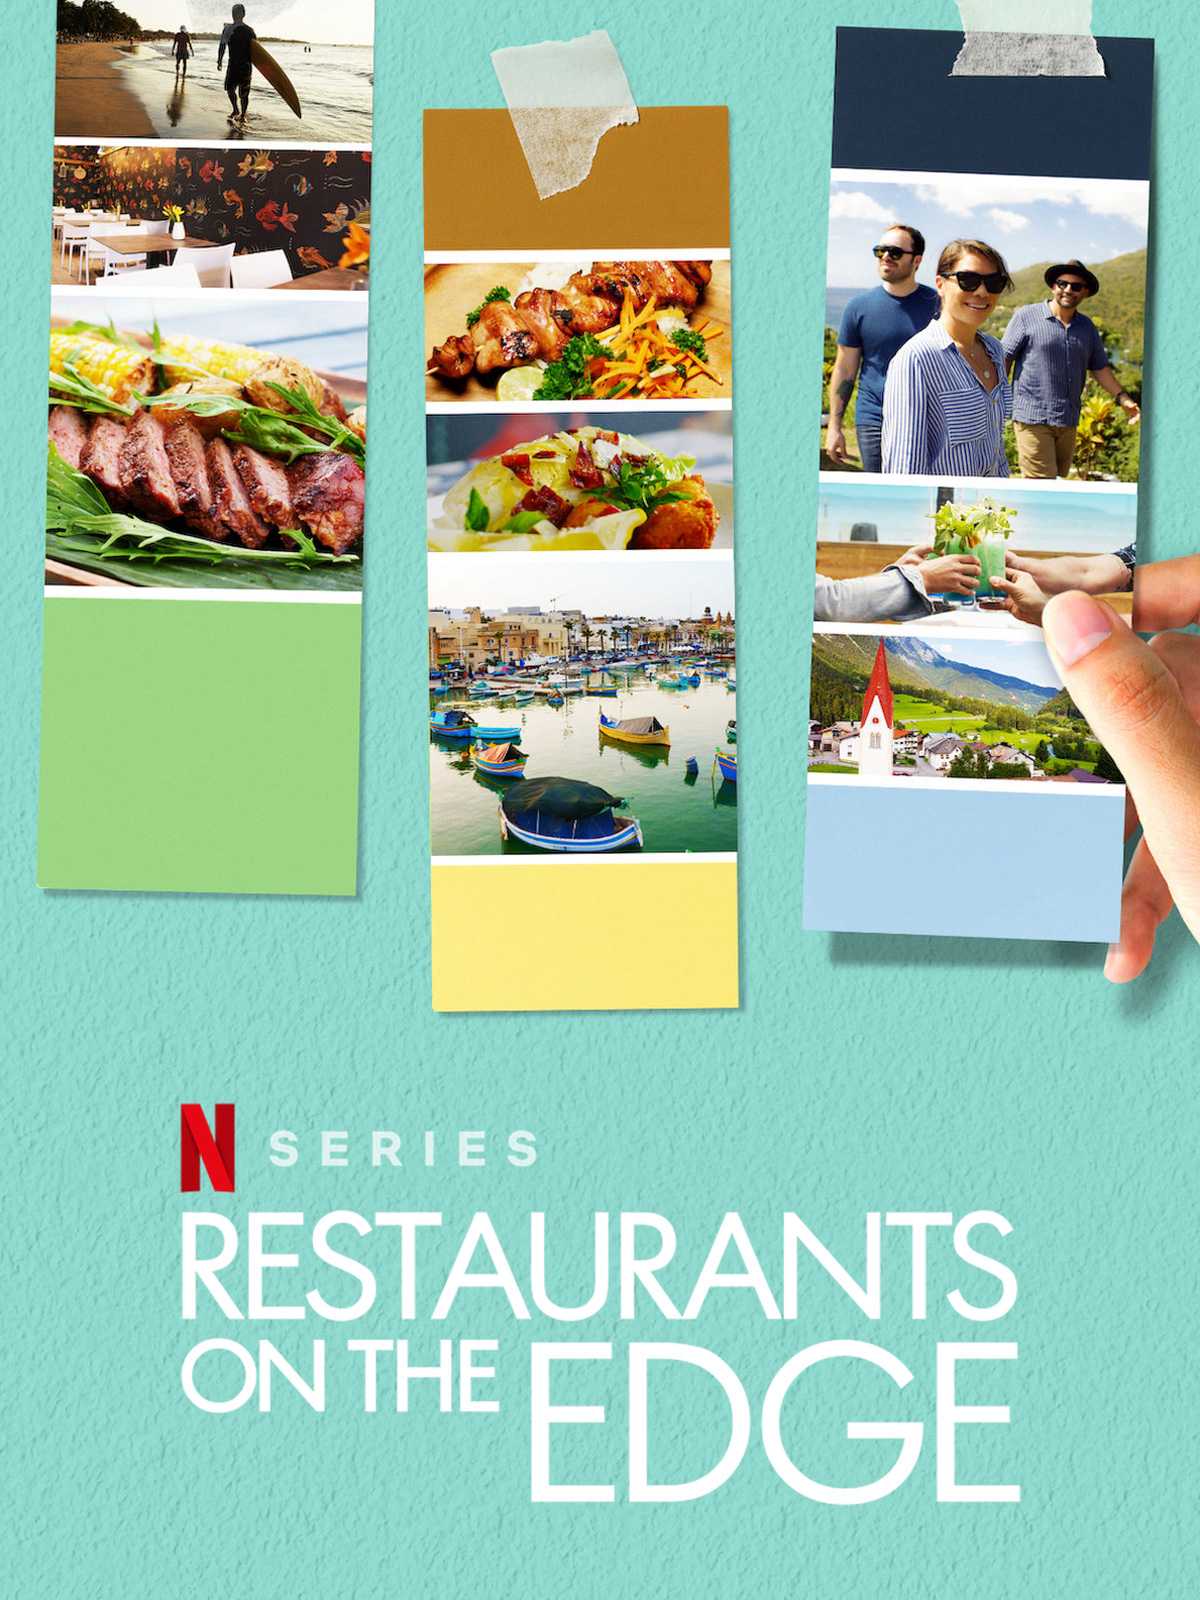 Tái khởi động nhà hàng trong mơ (phần 2) - Restaurants on the edge (season 2)